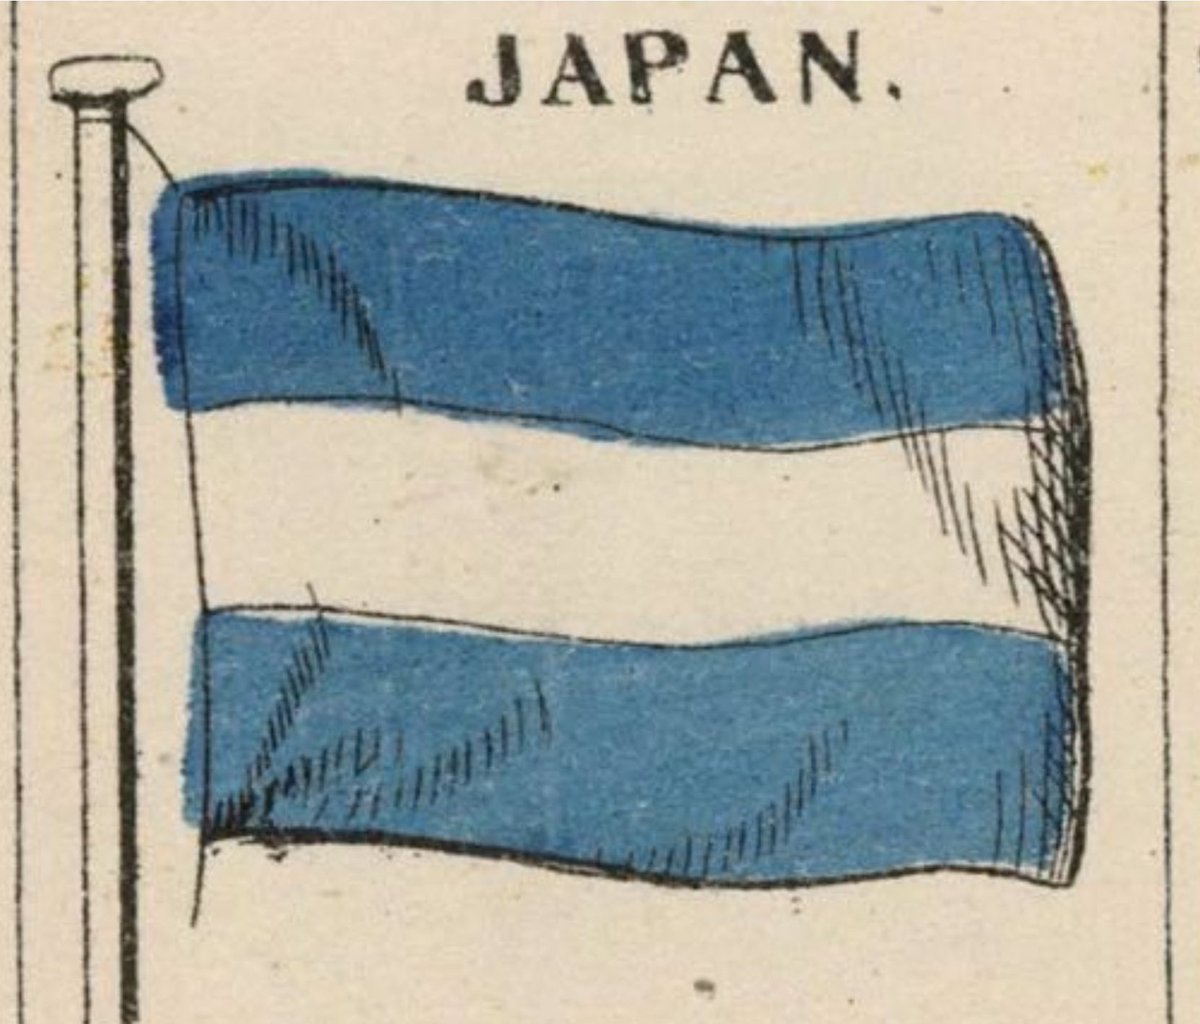 @mtskt496 @diz8aOhYDk5dSJi いや、紀元前じゃなく、もっと最近ですよね。ほんの数百年前まで日本もタルタリアが統治していたと言う話し…
タルタリアJAPANの旗もありましたし。